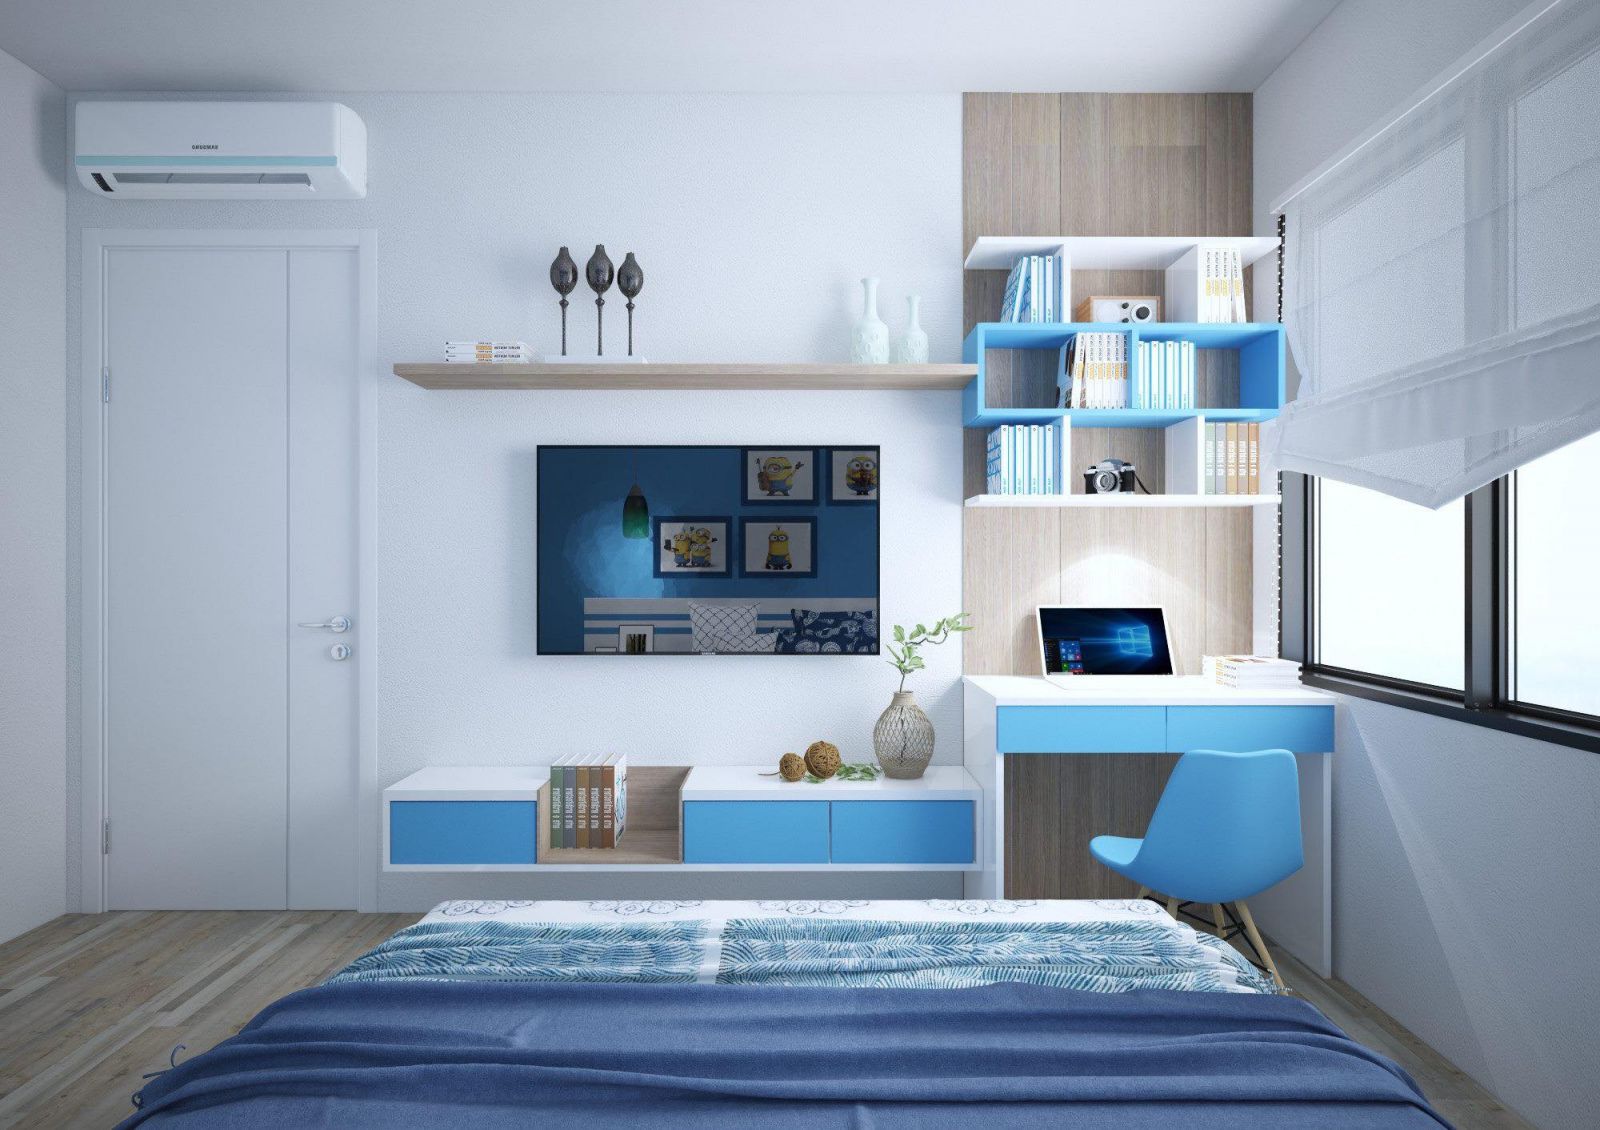 Thiết kế nội thất phòng ngủ con trai phong cách hiện đại tối giản. Sắc trắng - xanh dương kết hợp hài hòa, mang lại vẻ trẻ trung, năng động.